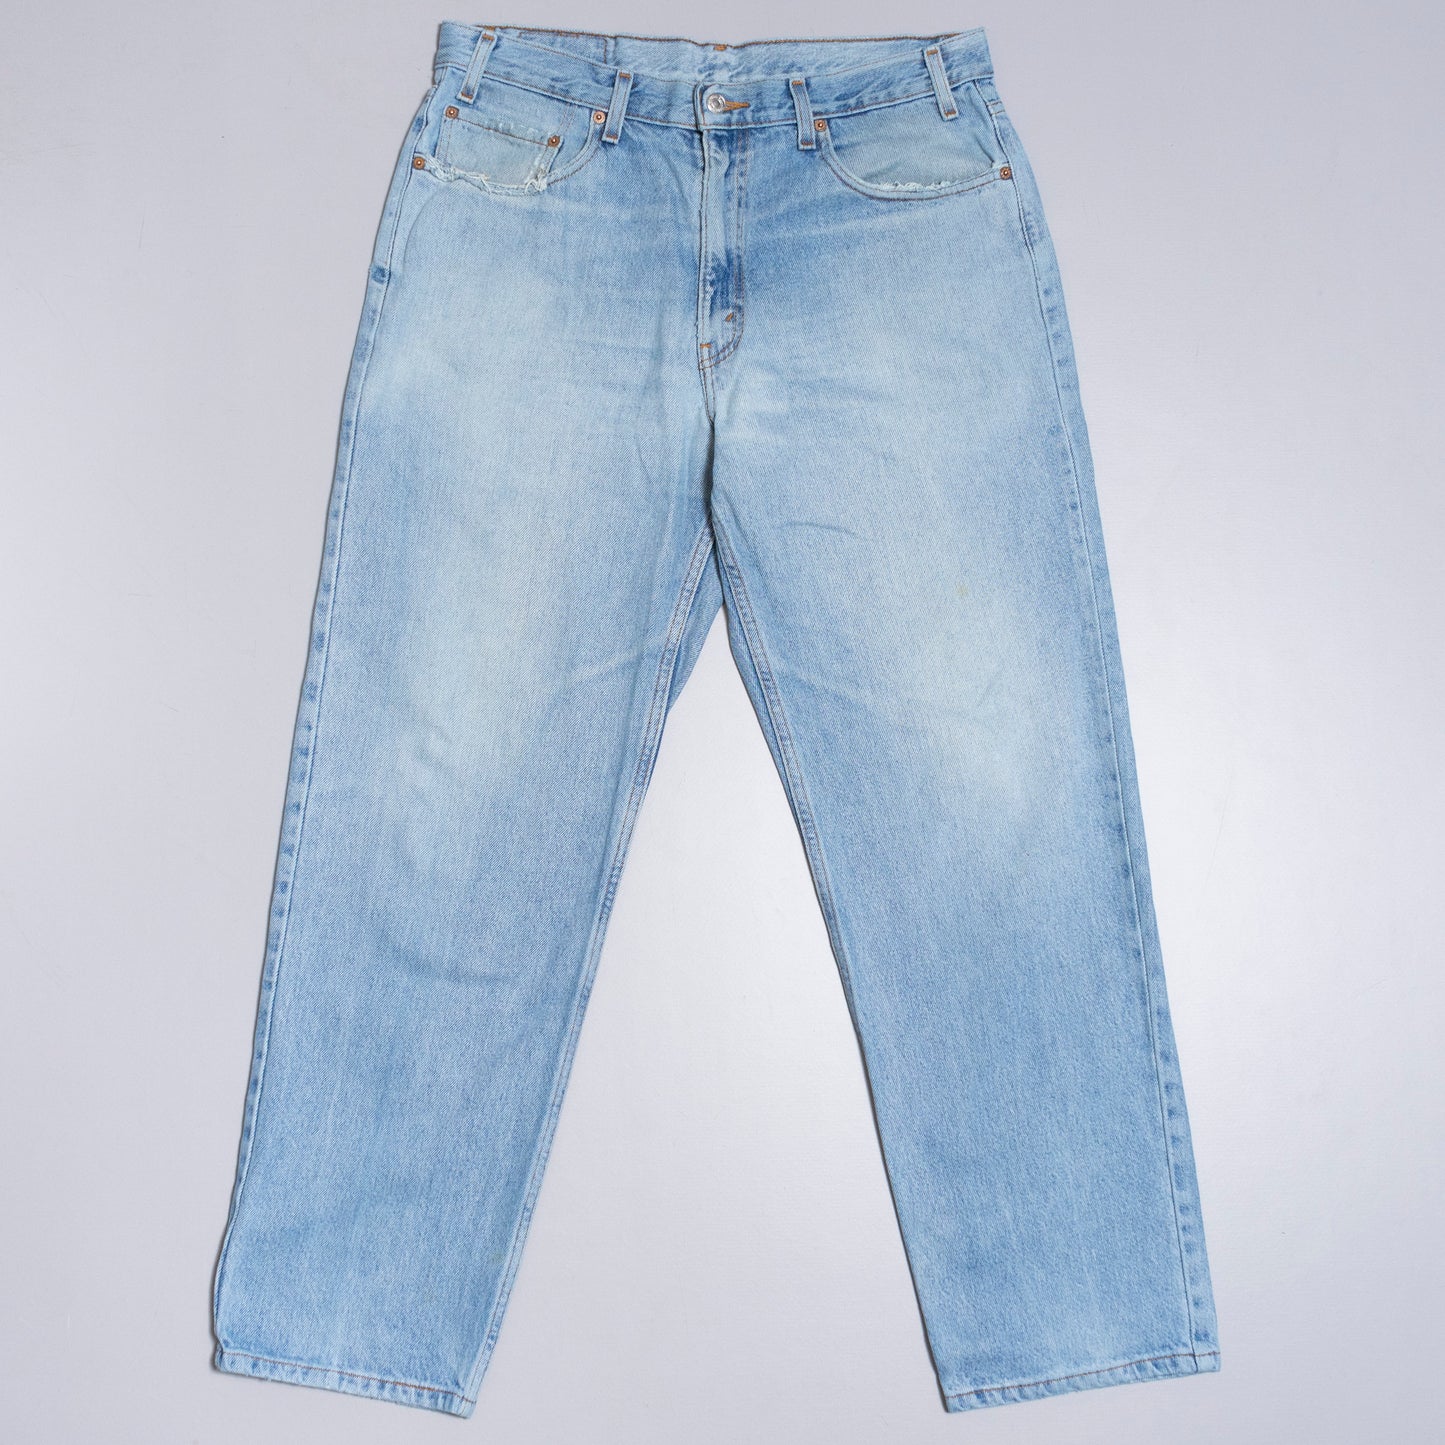 Levis 550 Jeans, 36/30